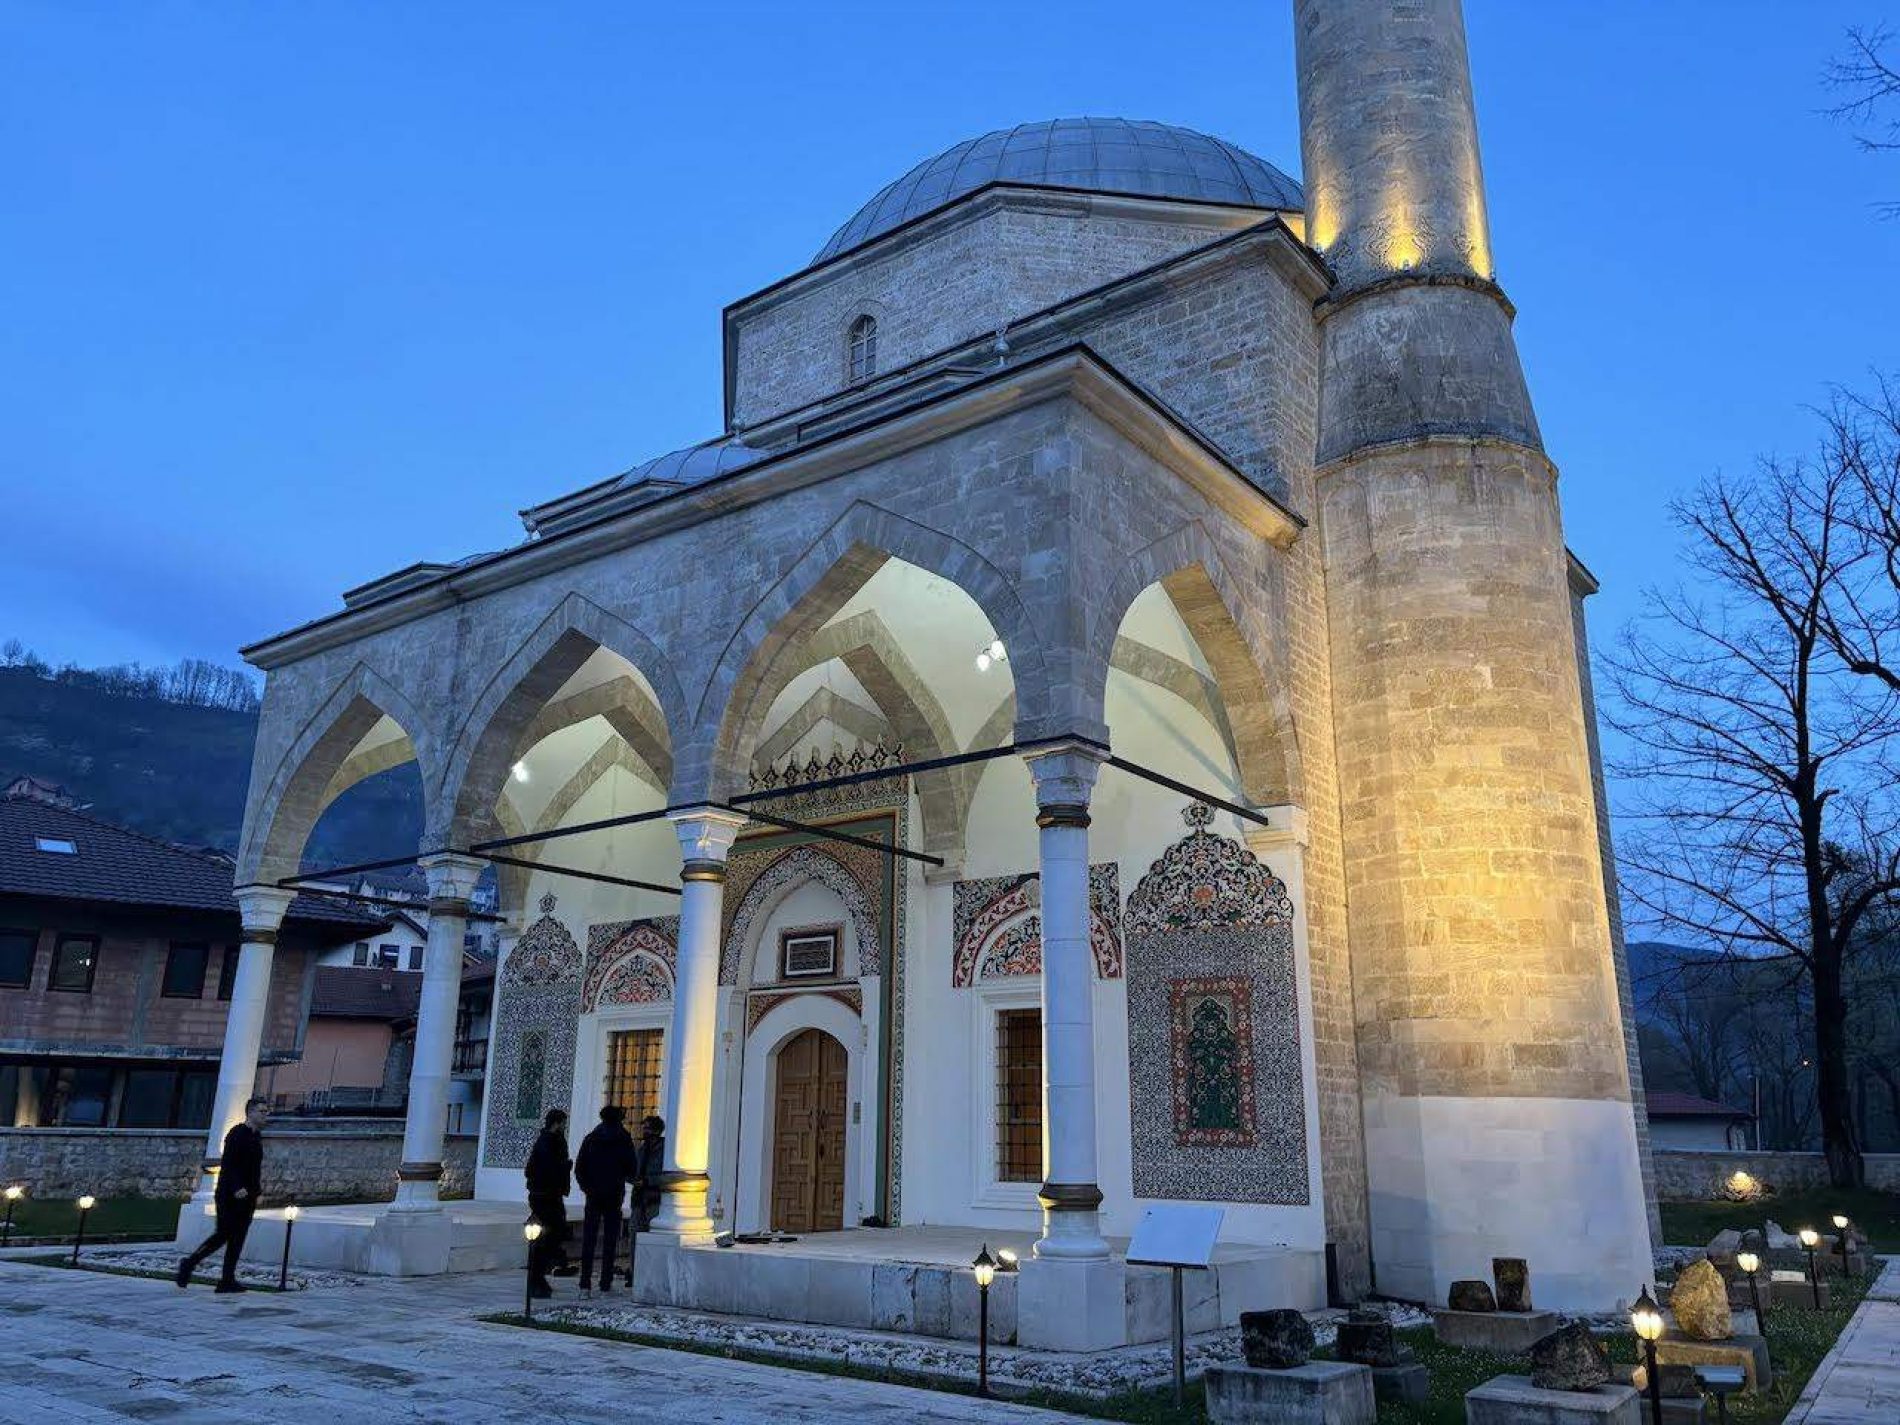 Aladža džamija u Foči i ovog ramazana mjesto susreta – prisustvo studenata iz svih krajeva svijeta